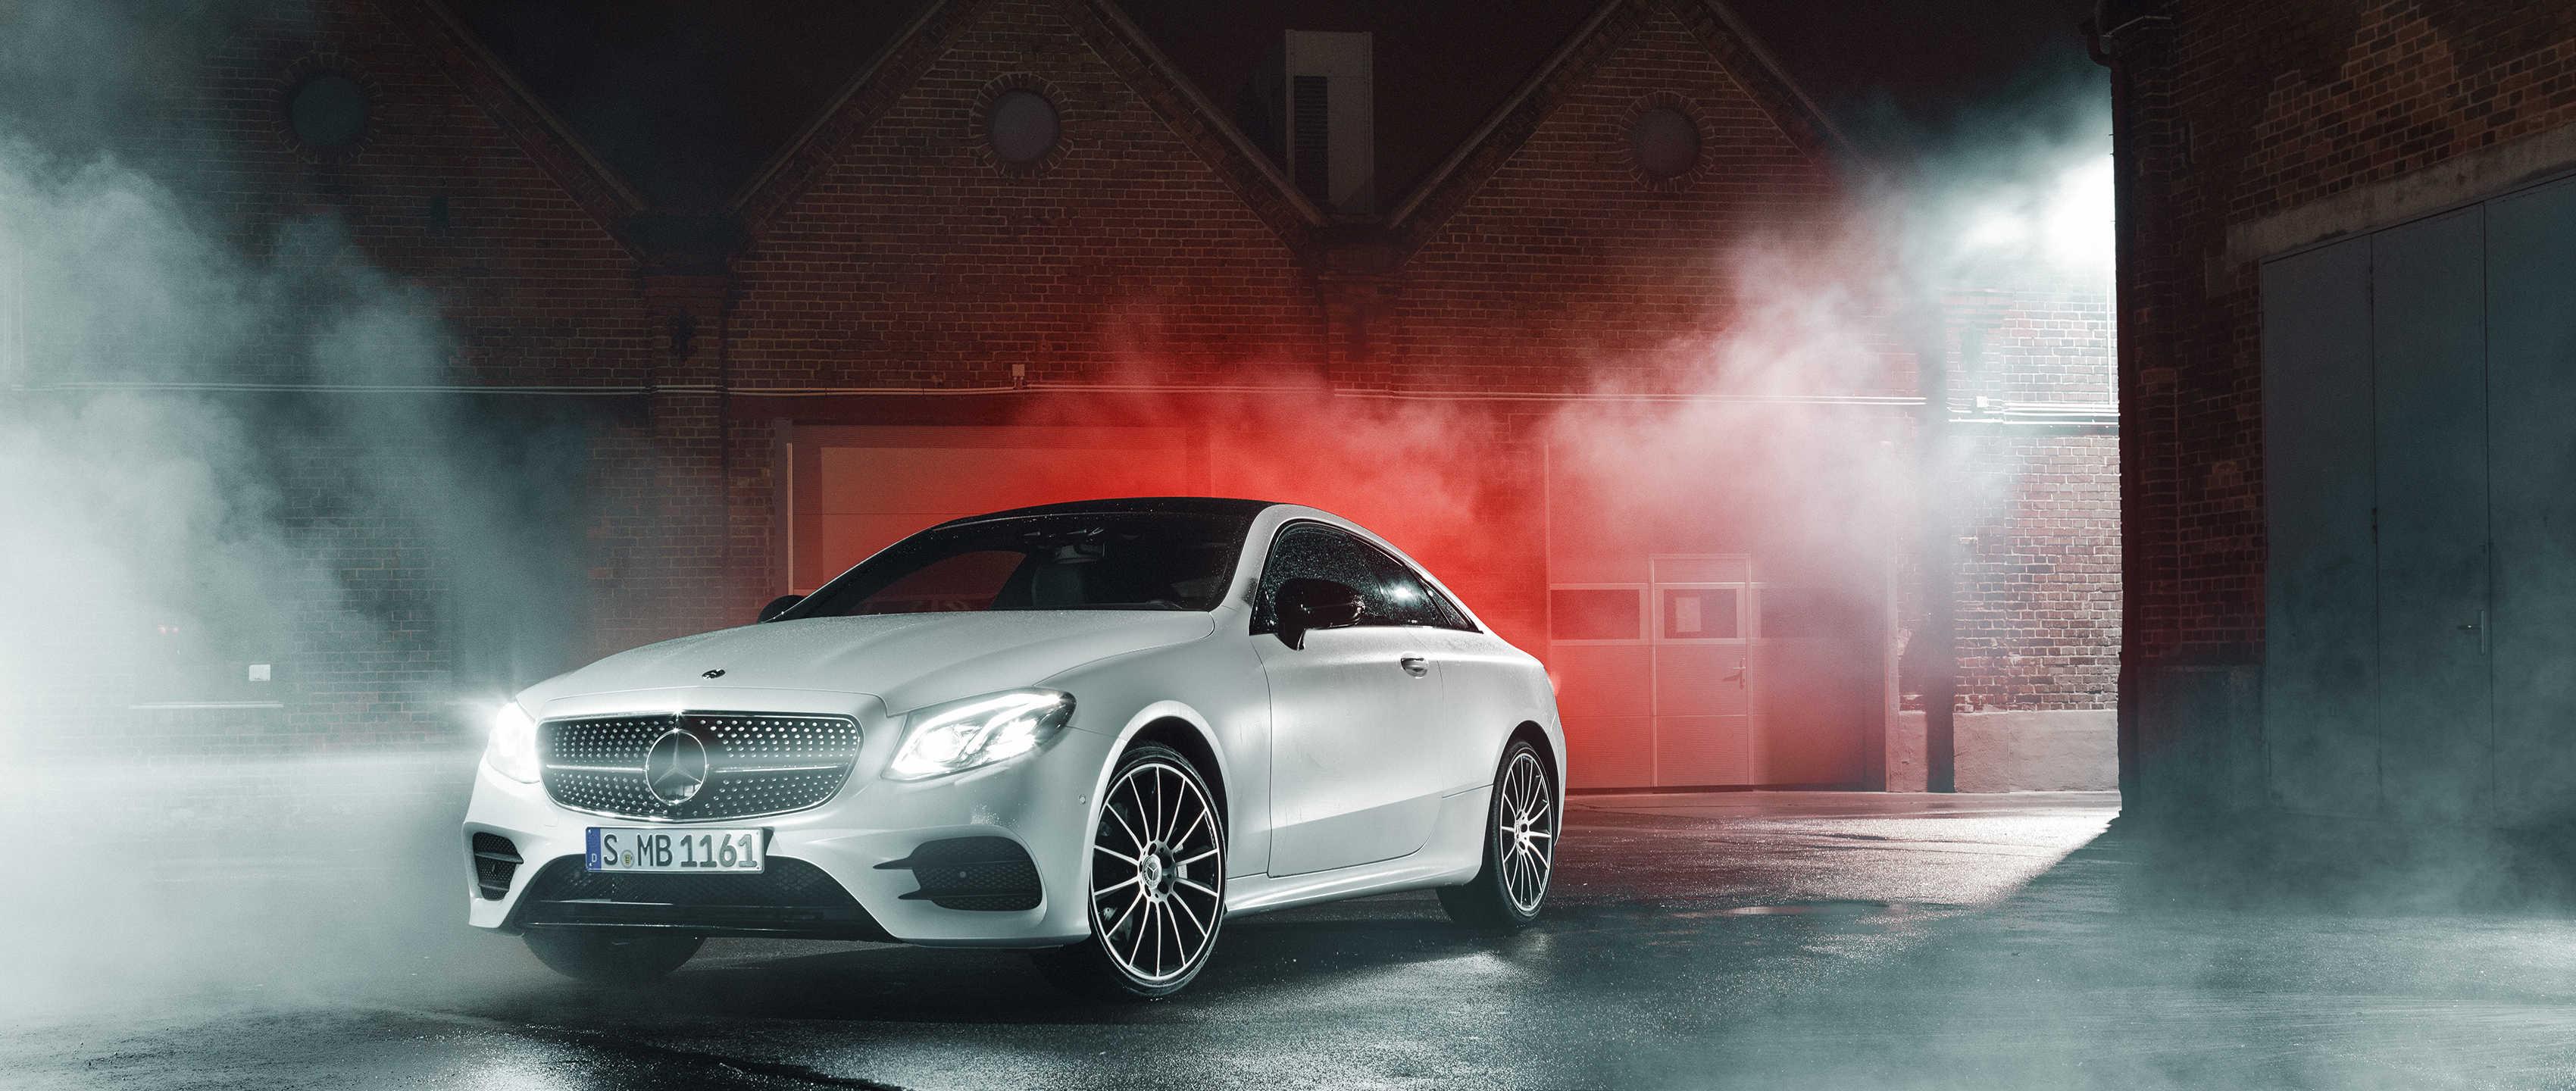 Đẹp mê hồn với Mercedes Vision AVTR Concept  Siêu xe phá vỡ ranh giới phim  viễn tưởng và đời thực